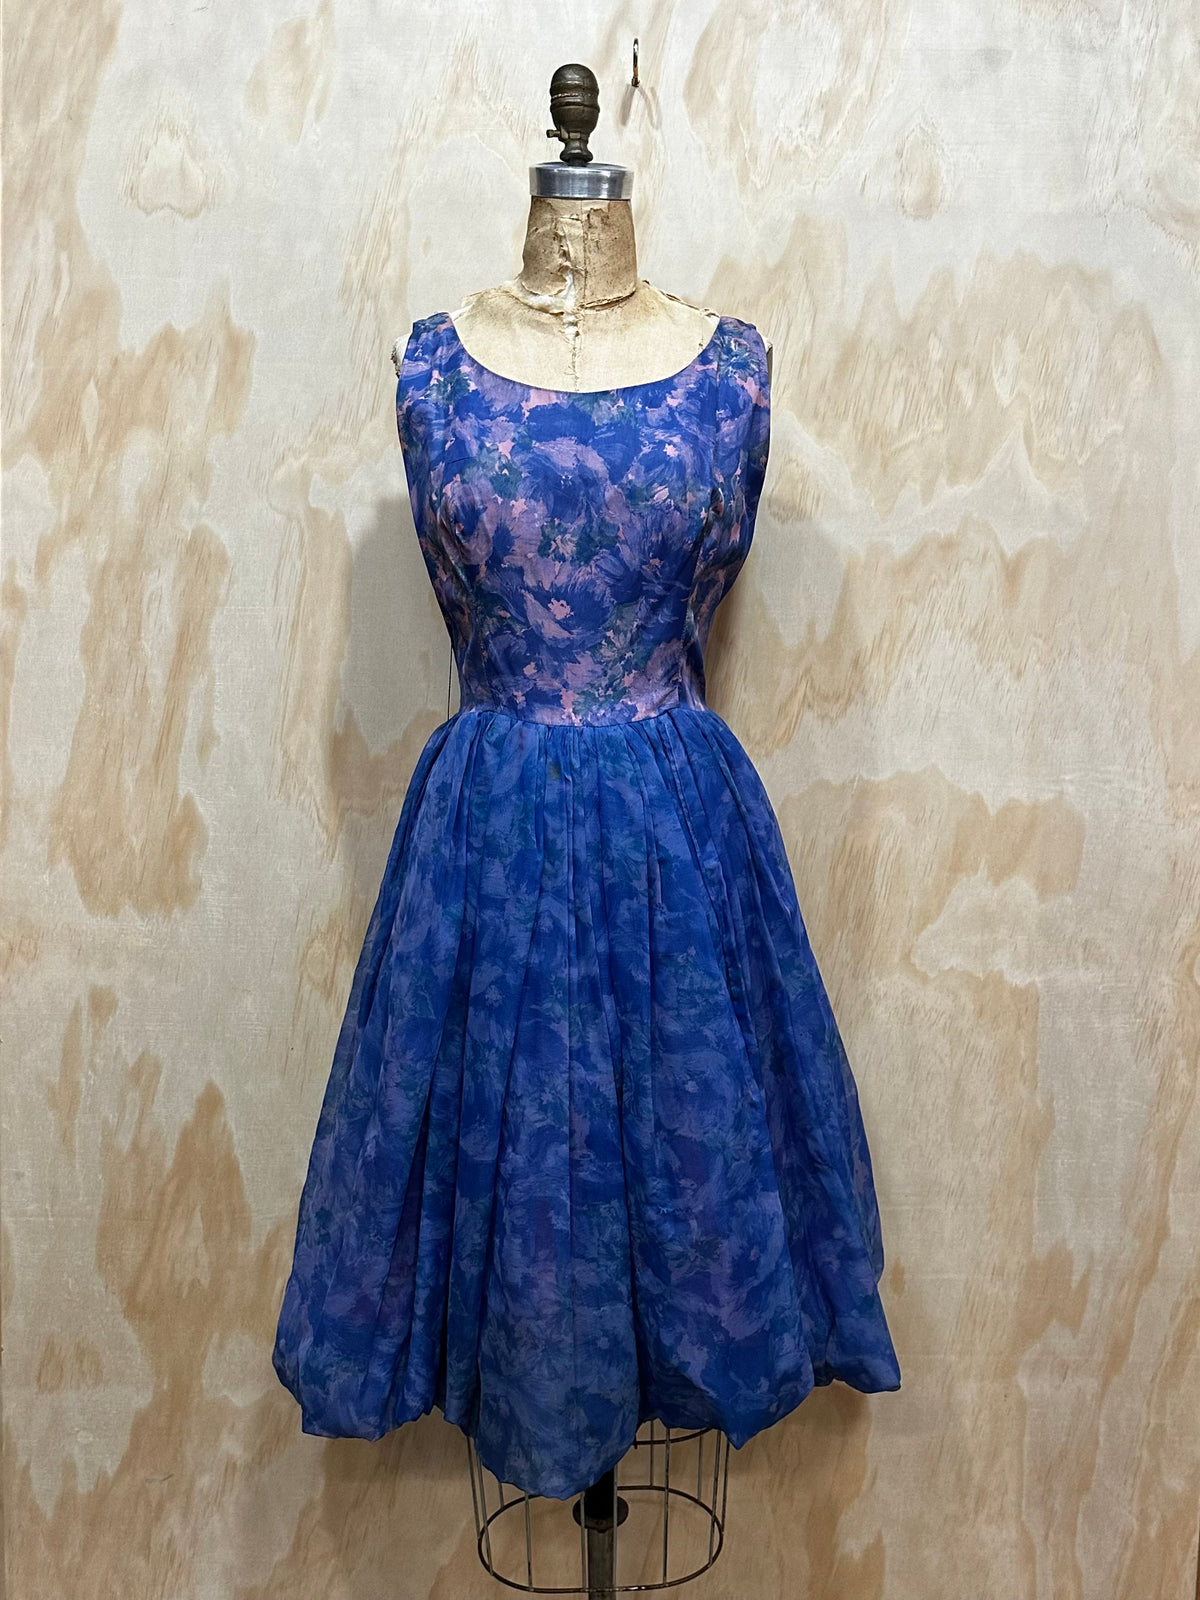 Vintage 1950's Blue Floral Chiffon Party Dress